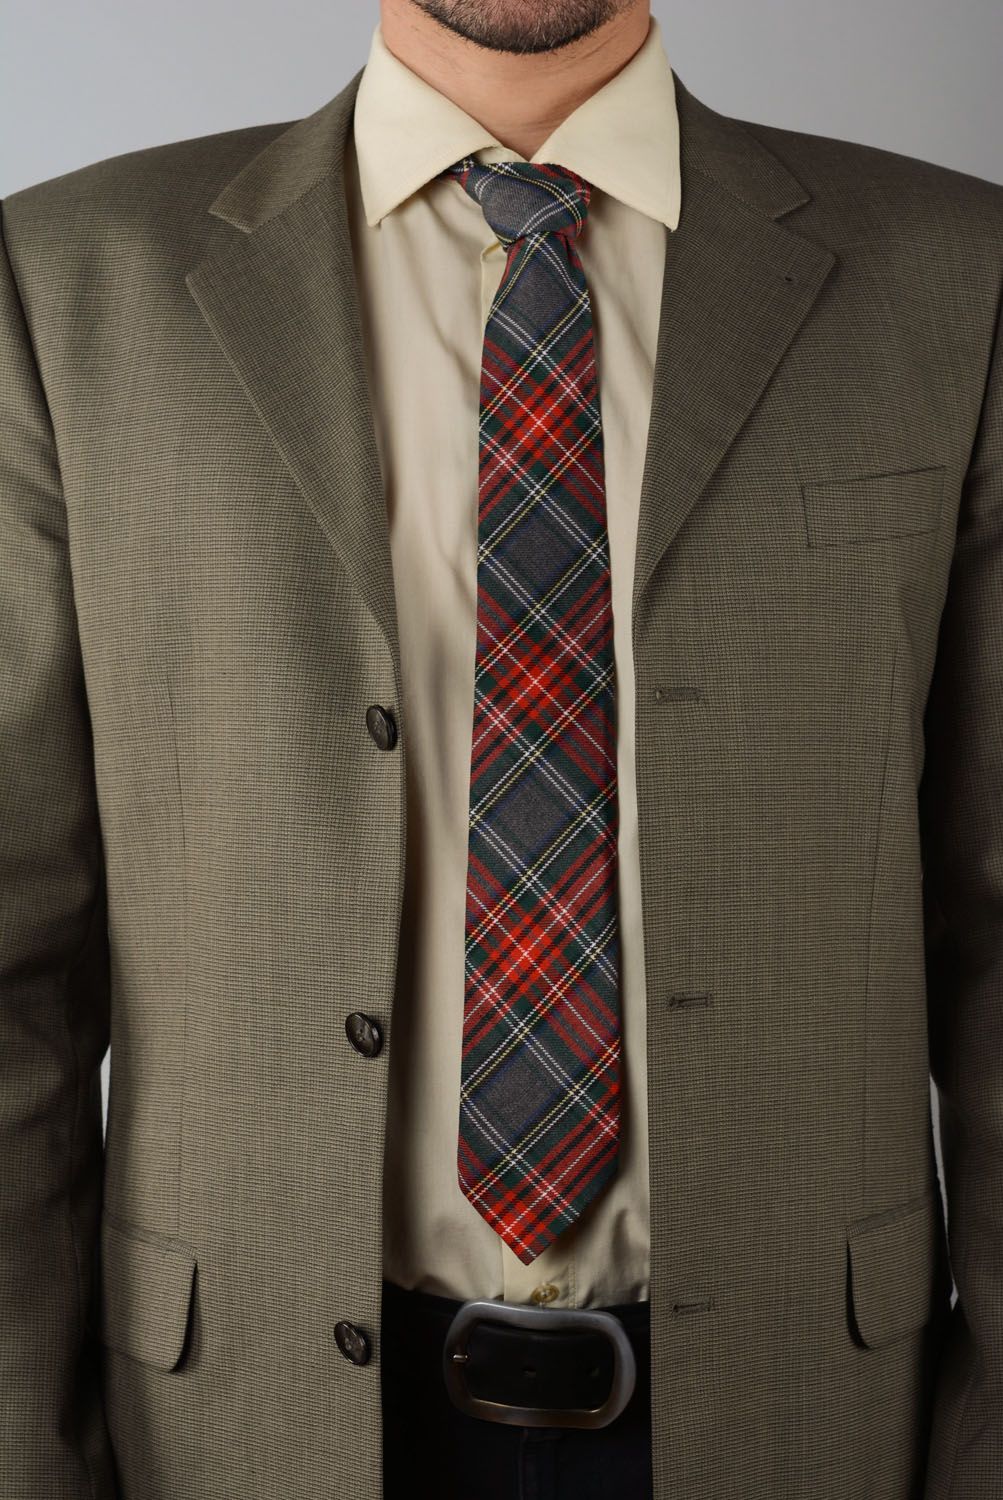 Cravate du tweed à carreaux faite main photo 1